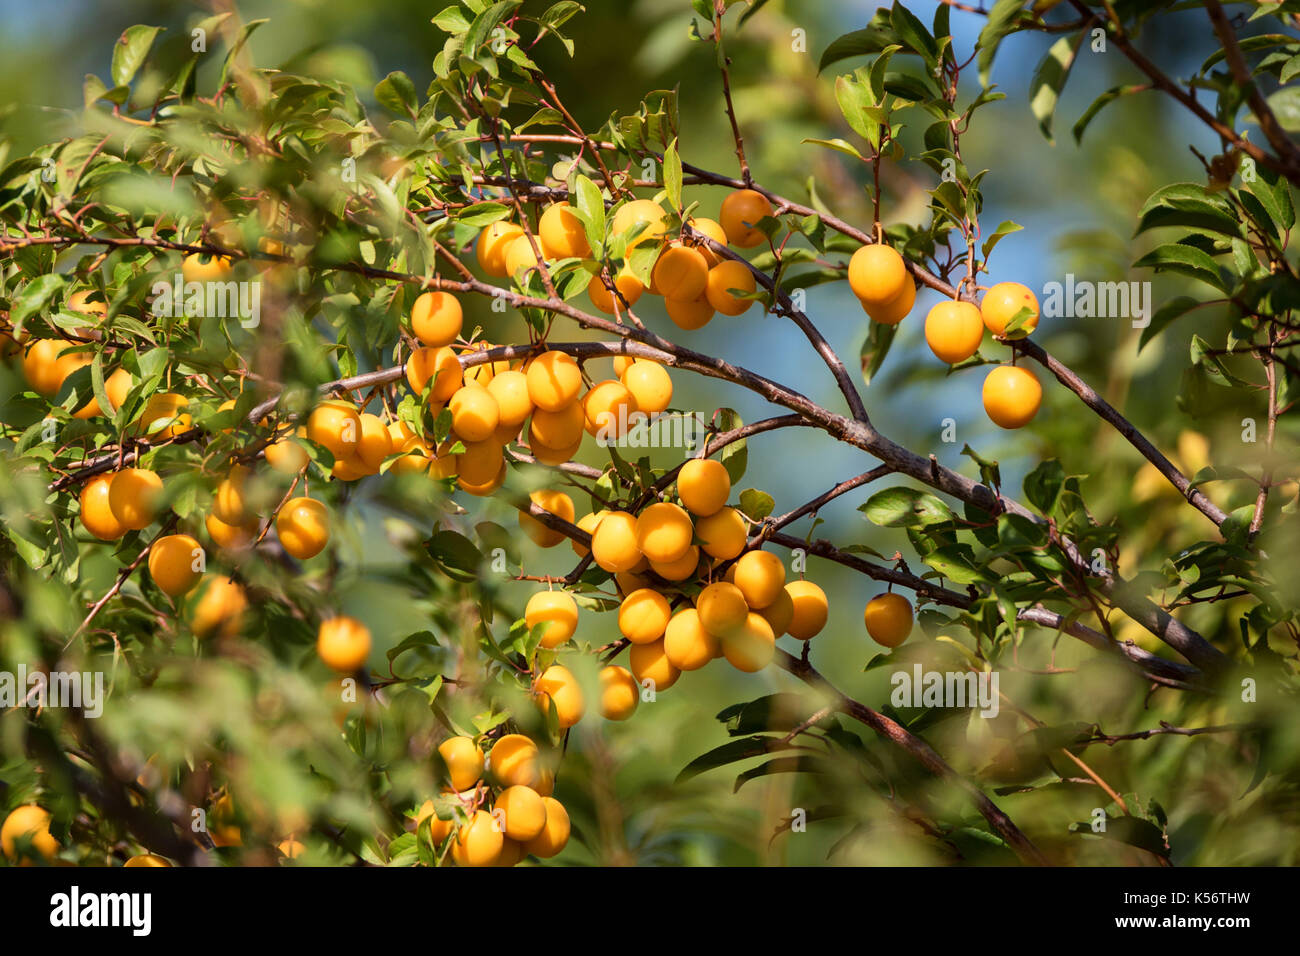 Cherry plum or Prunus cerasifera fruit on tree Stock Photo